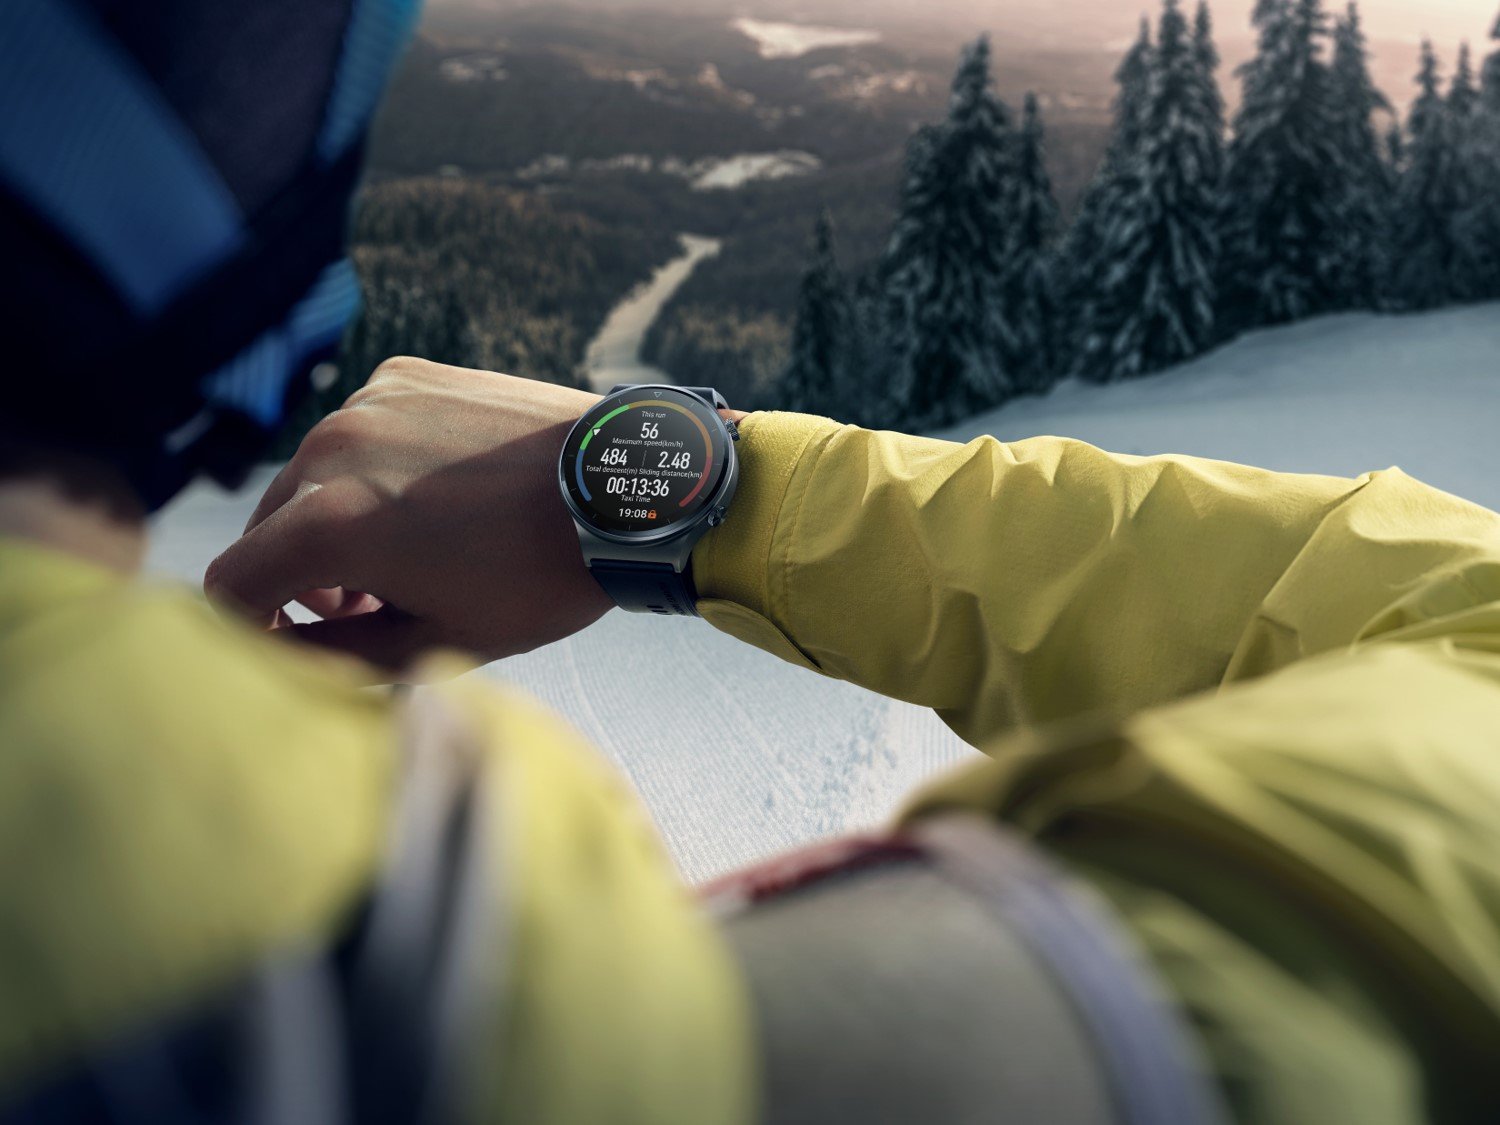 Noul smartwatch vârf de gamă, Huawei Watch GT 2 Pro, se lansează pe piața din România cu o ofertă specială